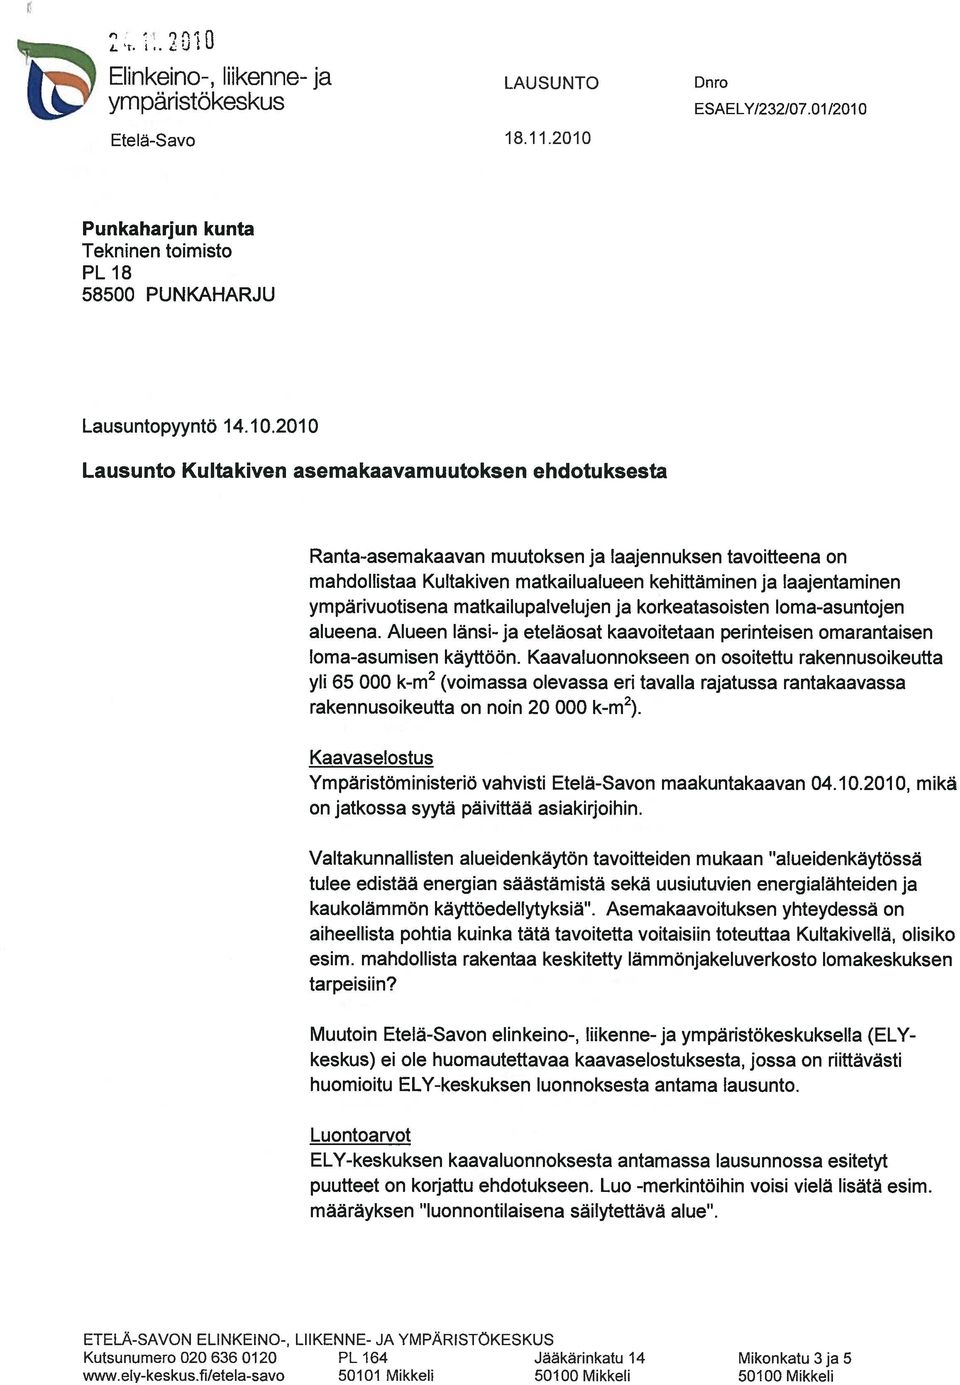 Punkaharjun kunta Tekninen toimisto PL 18 58500 PUNKAHARJU Lausuntopyyntö 14.10.